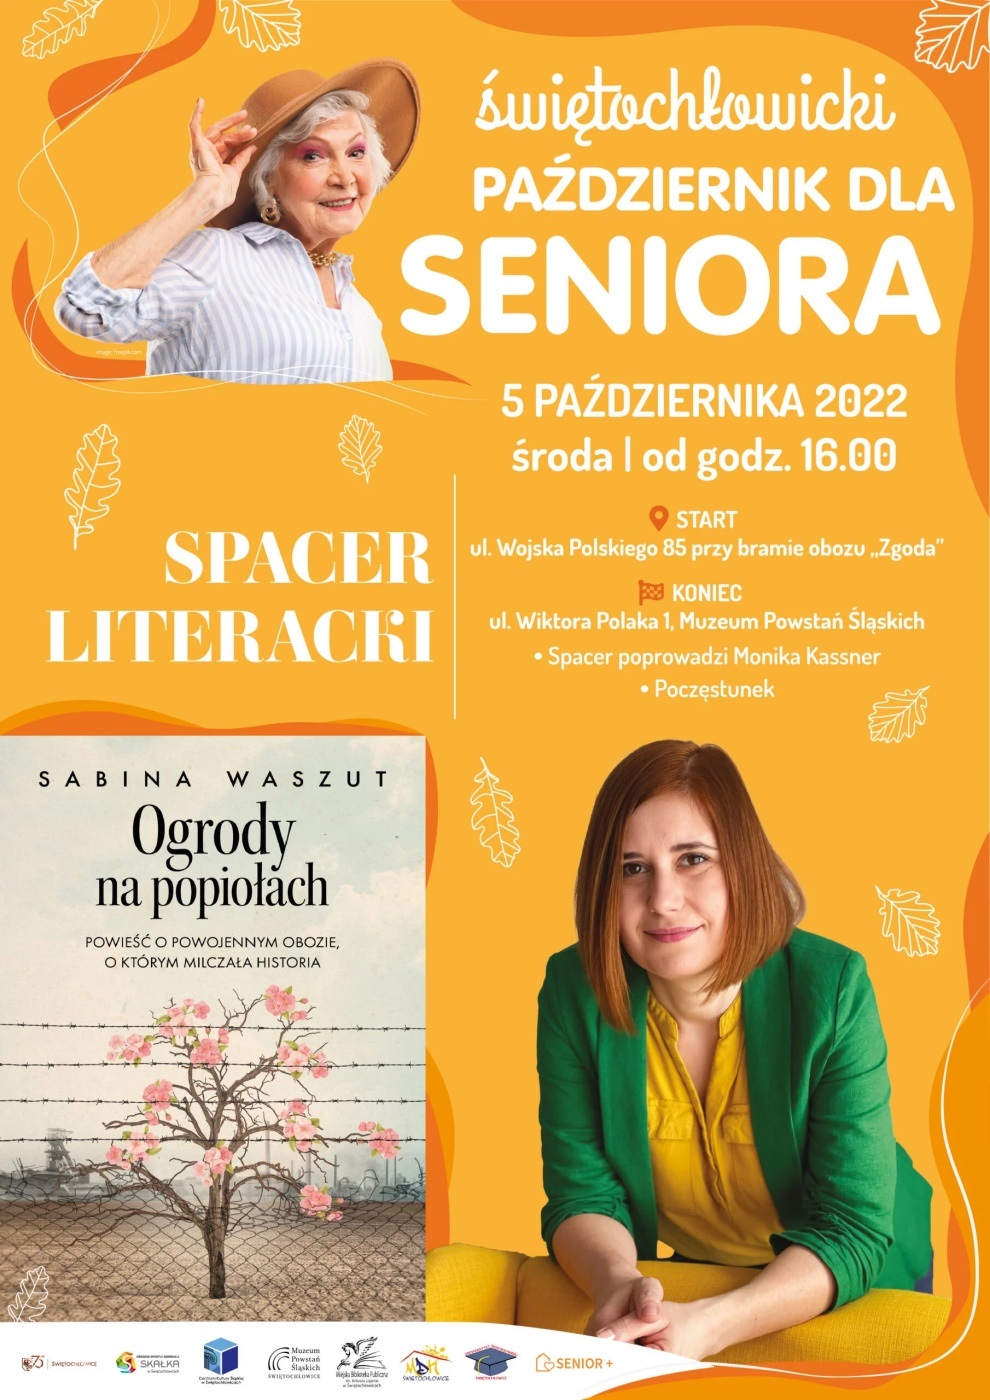 Spacer literacki w Świętochłowicach